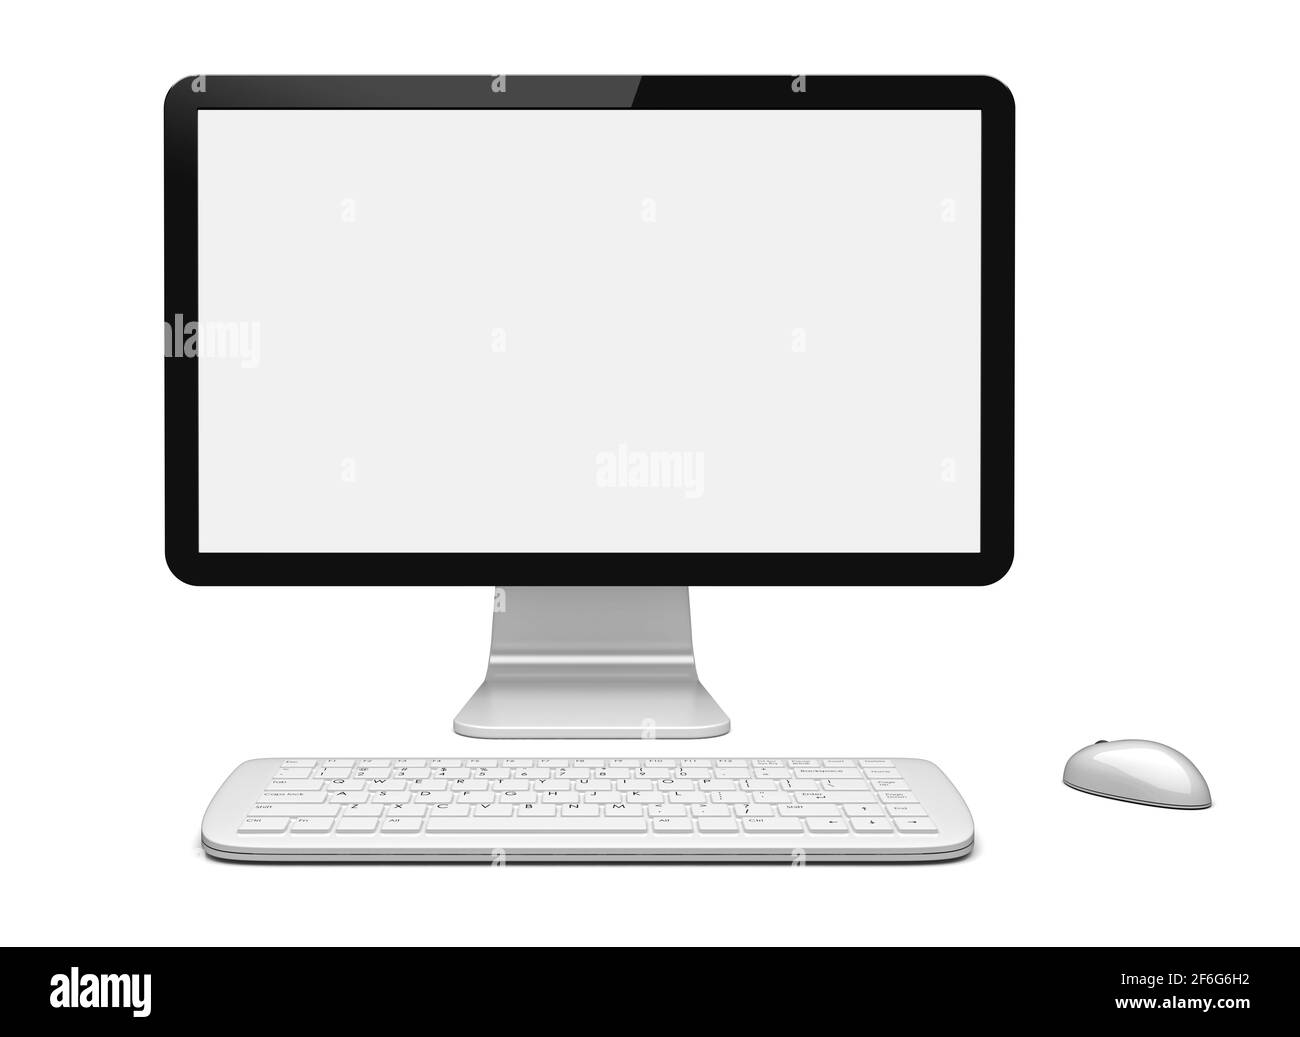 Desktop-pc-Computer mit großem Breitbildschirm, Tastatur und Maus sowie leerem Bildschirm. Isoliert auf Weiß. 3d-gerendertes Bild Stockfoto